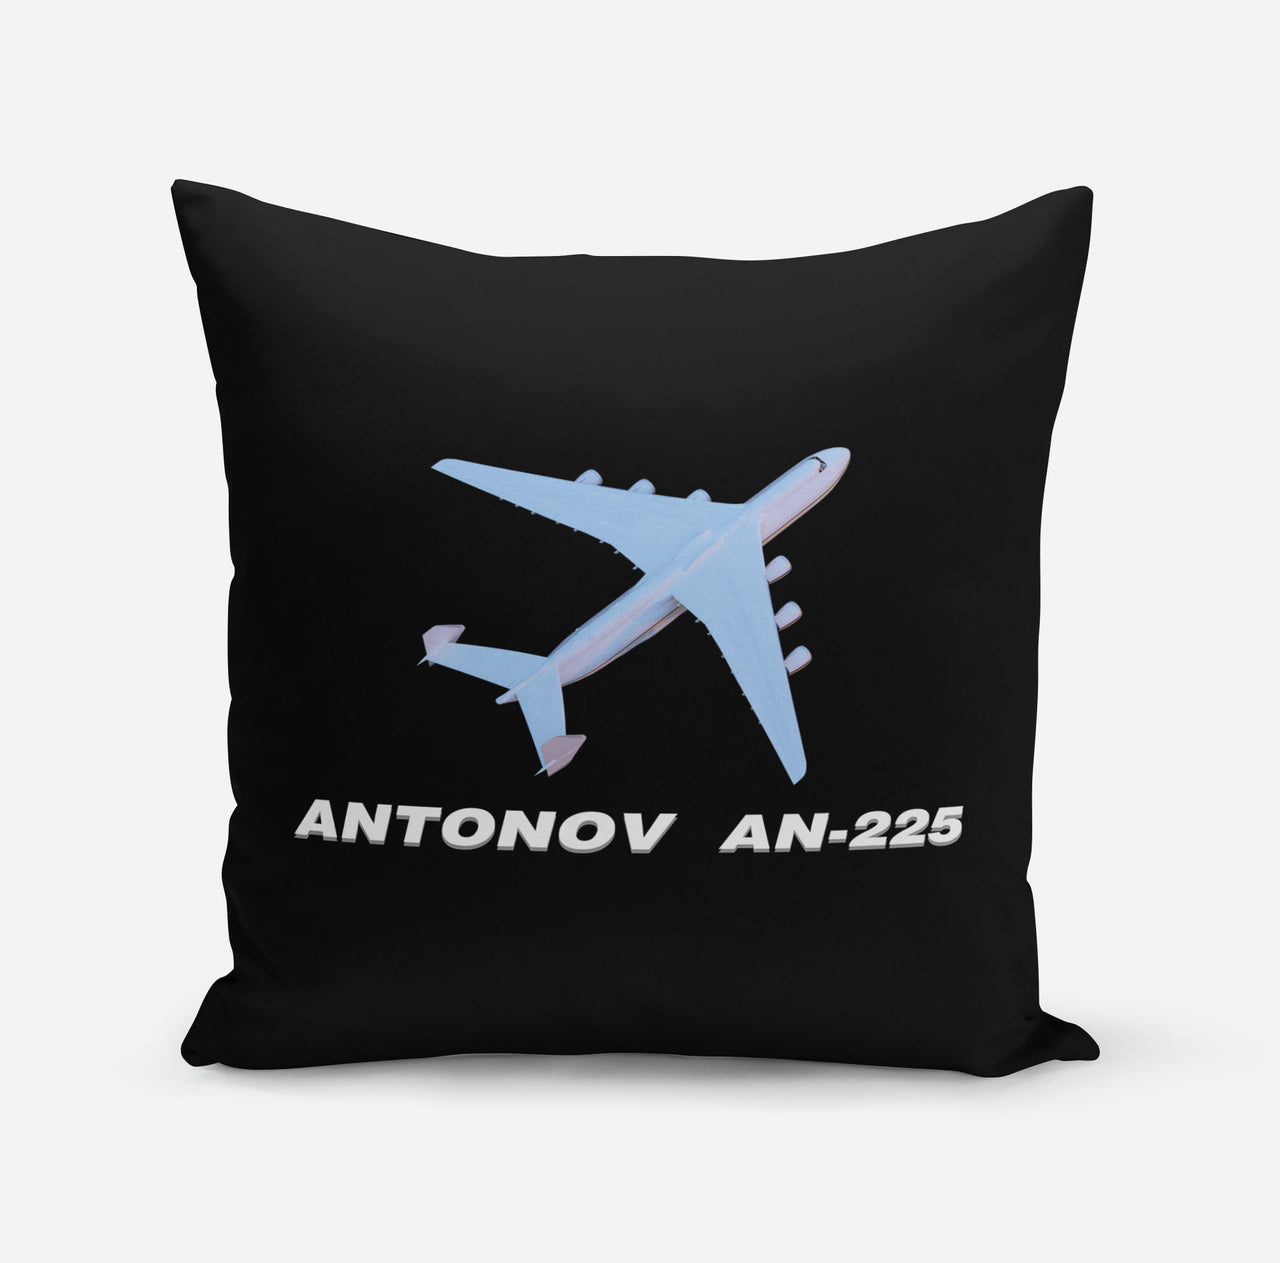 Antonov AN-225 (6) Designed Pillows